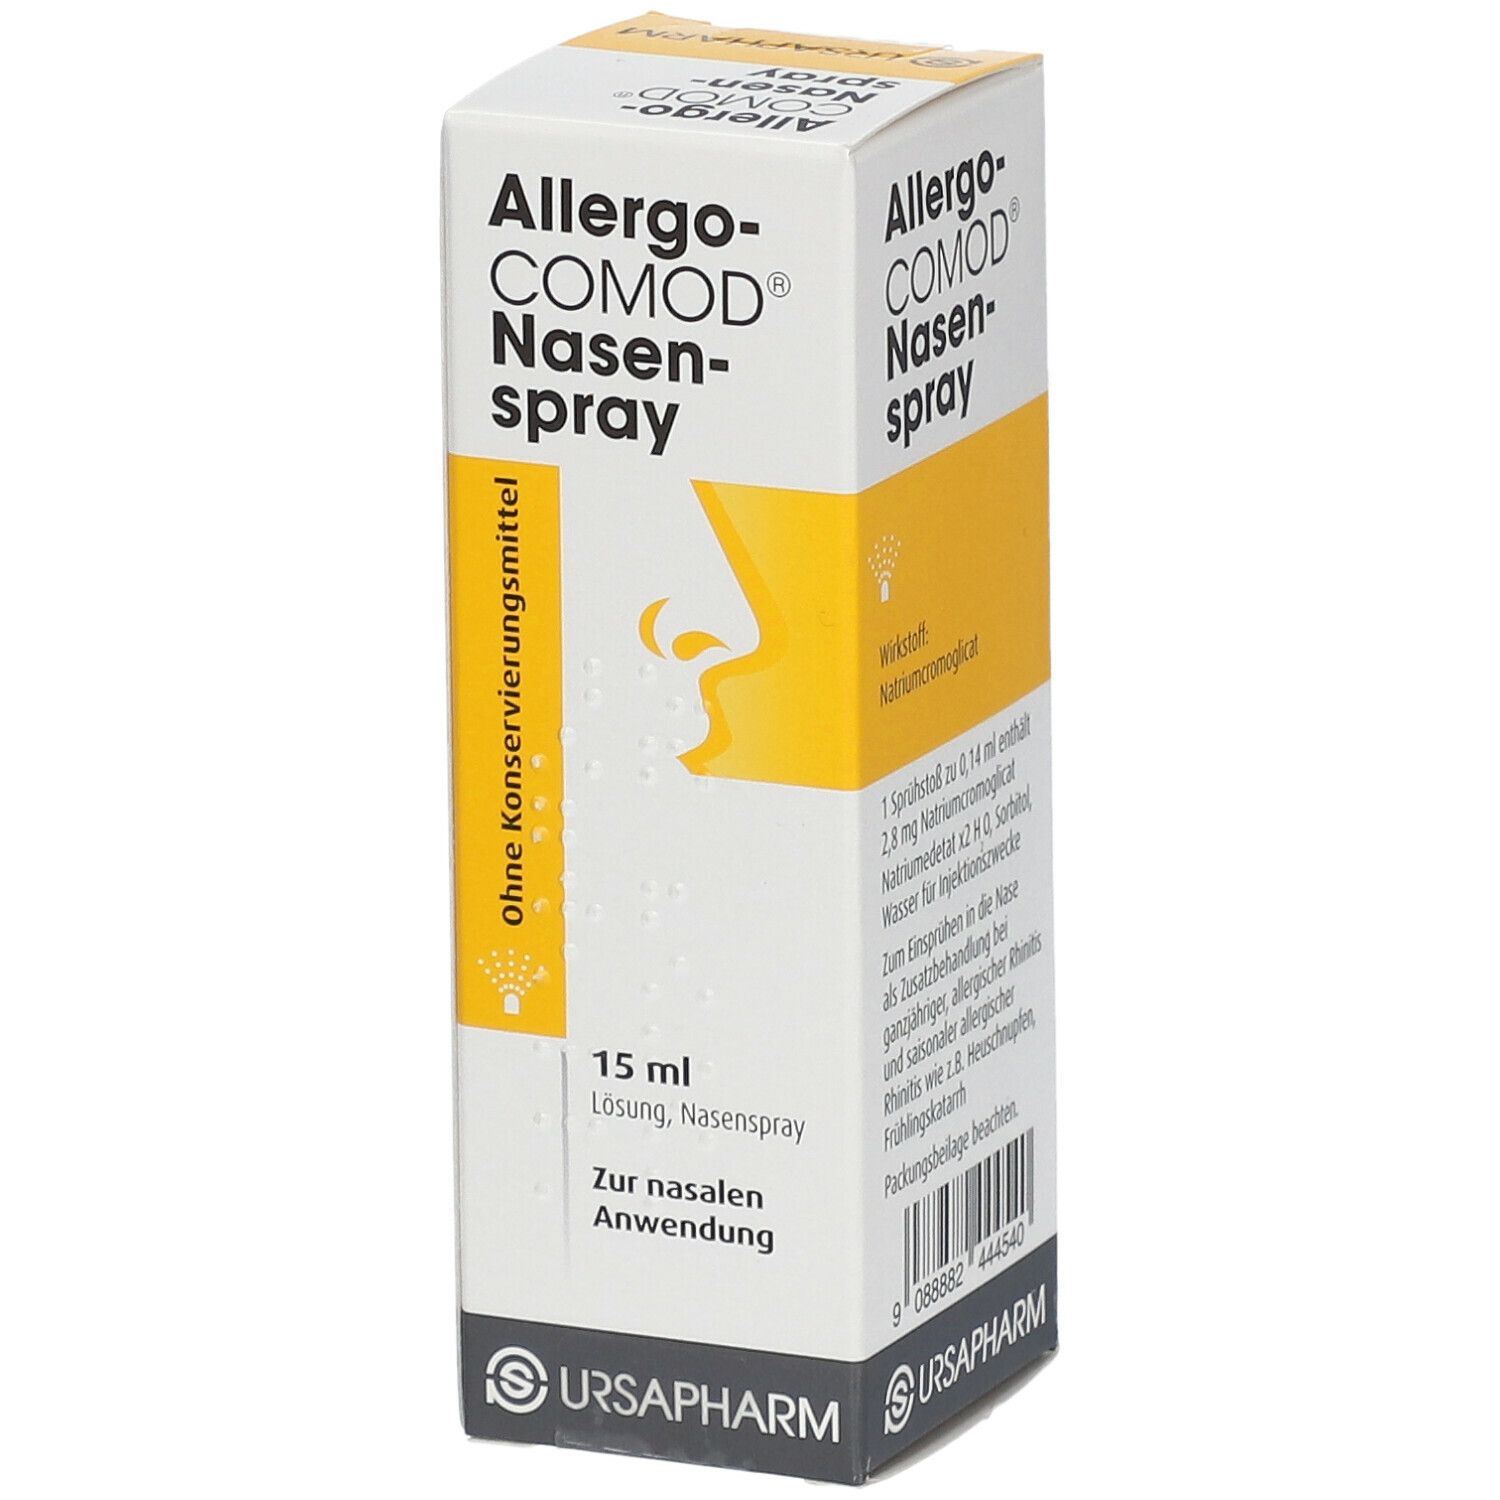 Allergo-COMOD® Nasenspray